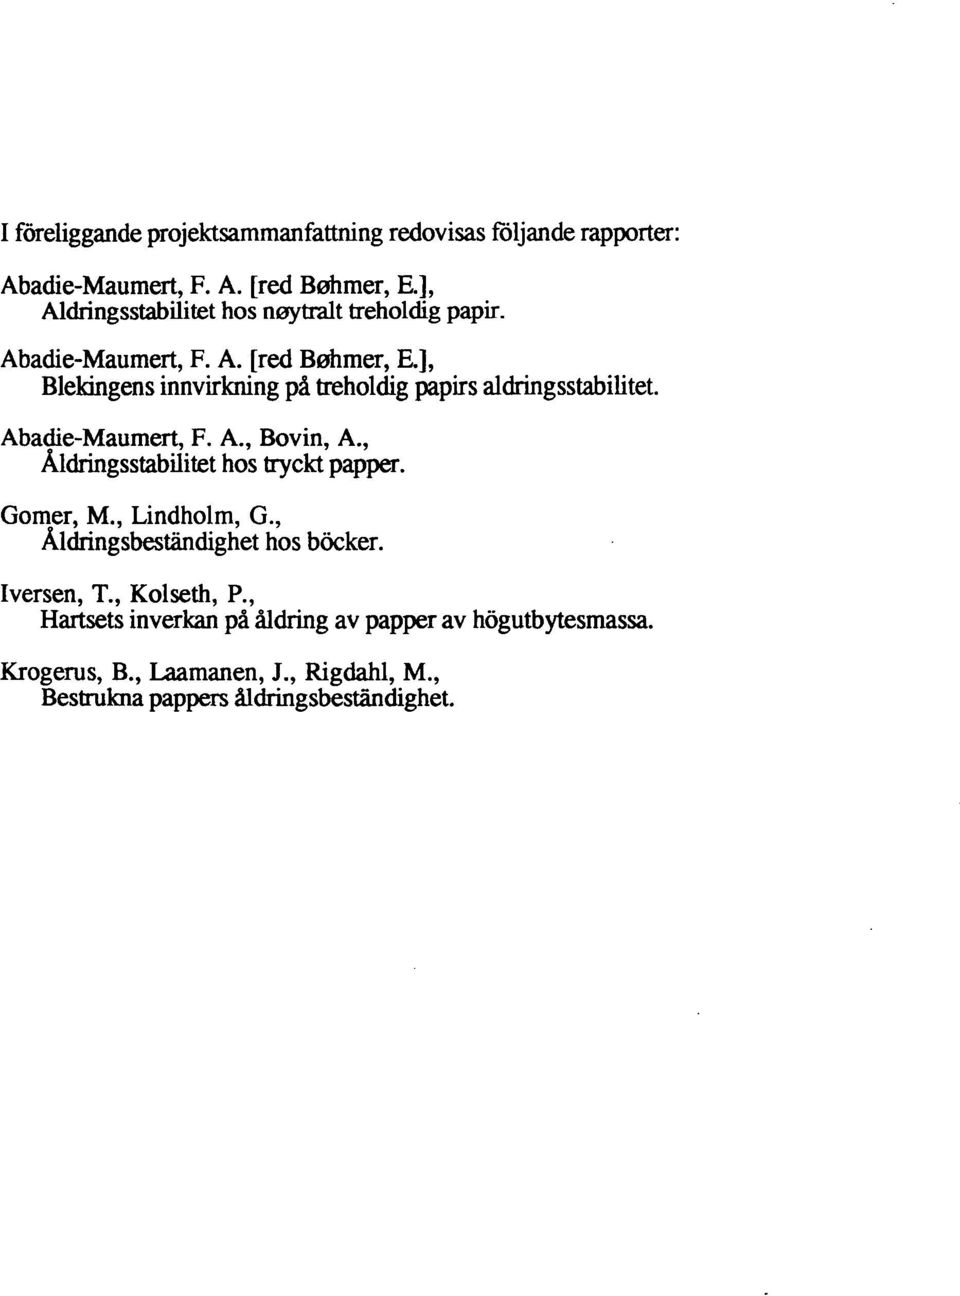 Abadie-Maumert, F. A., Bovin, A., Aldringsstabilitet hos tryckt papper. Gomer, M., Lindholm, G., Aldringsbestandighet hos bocker.